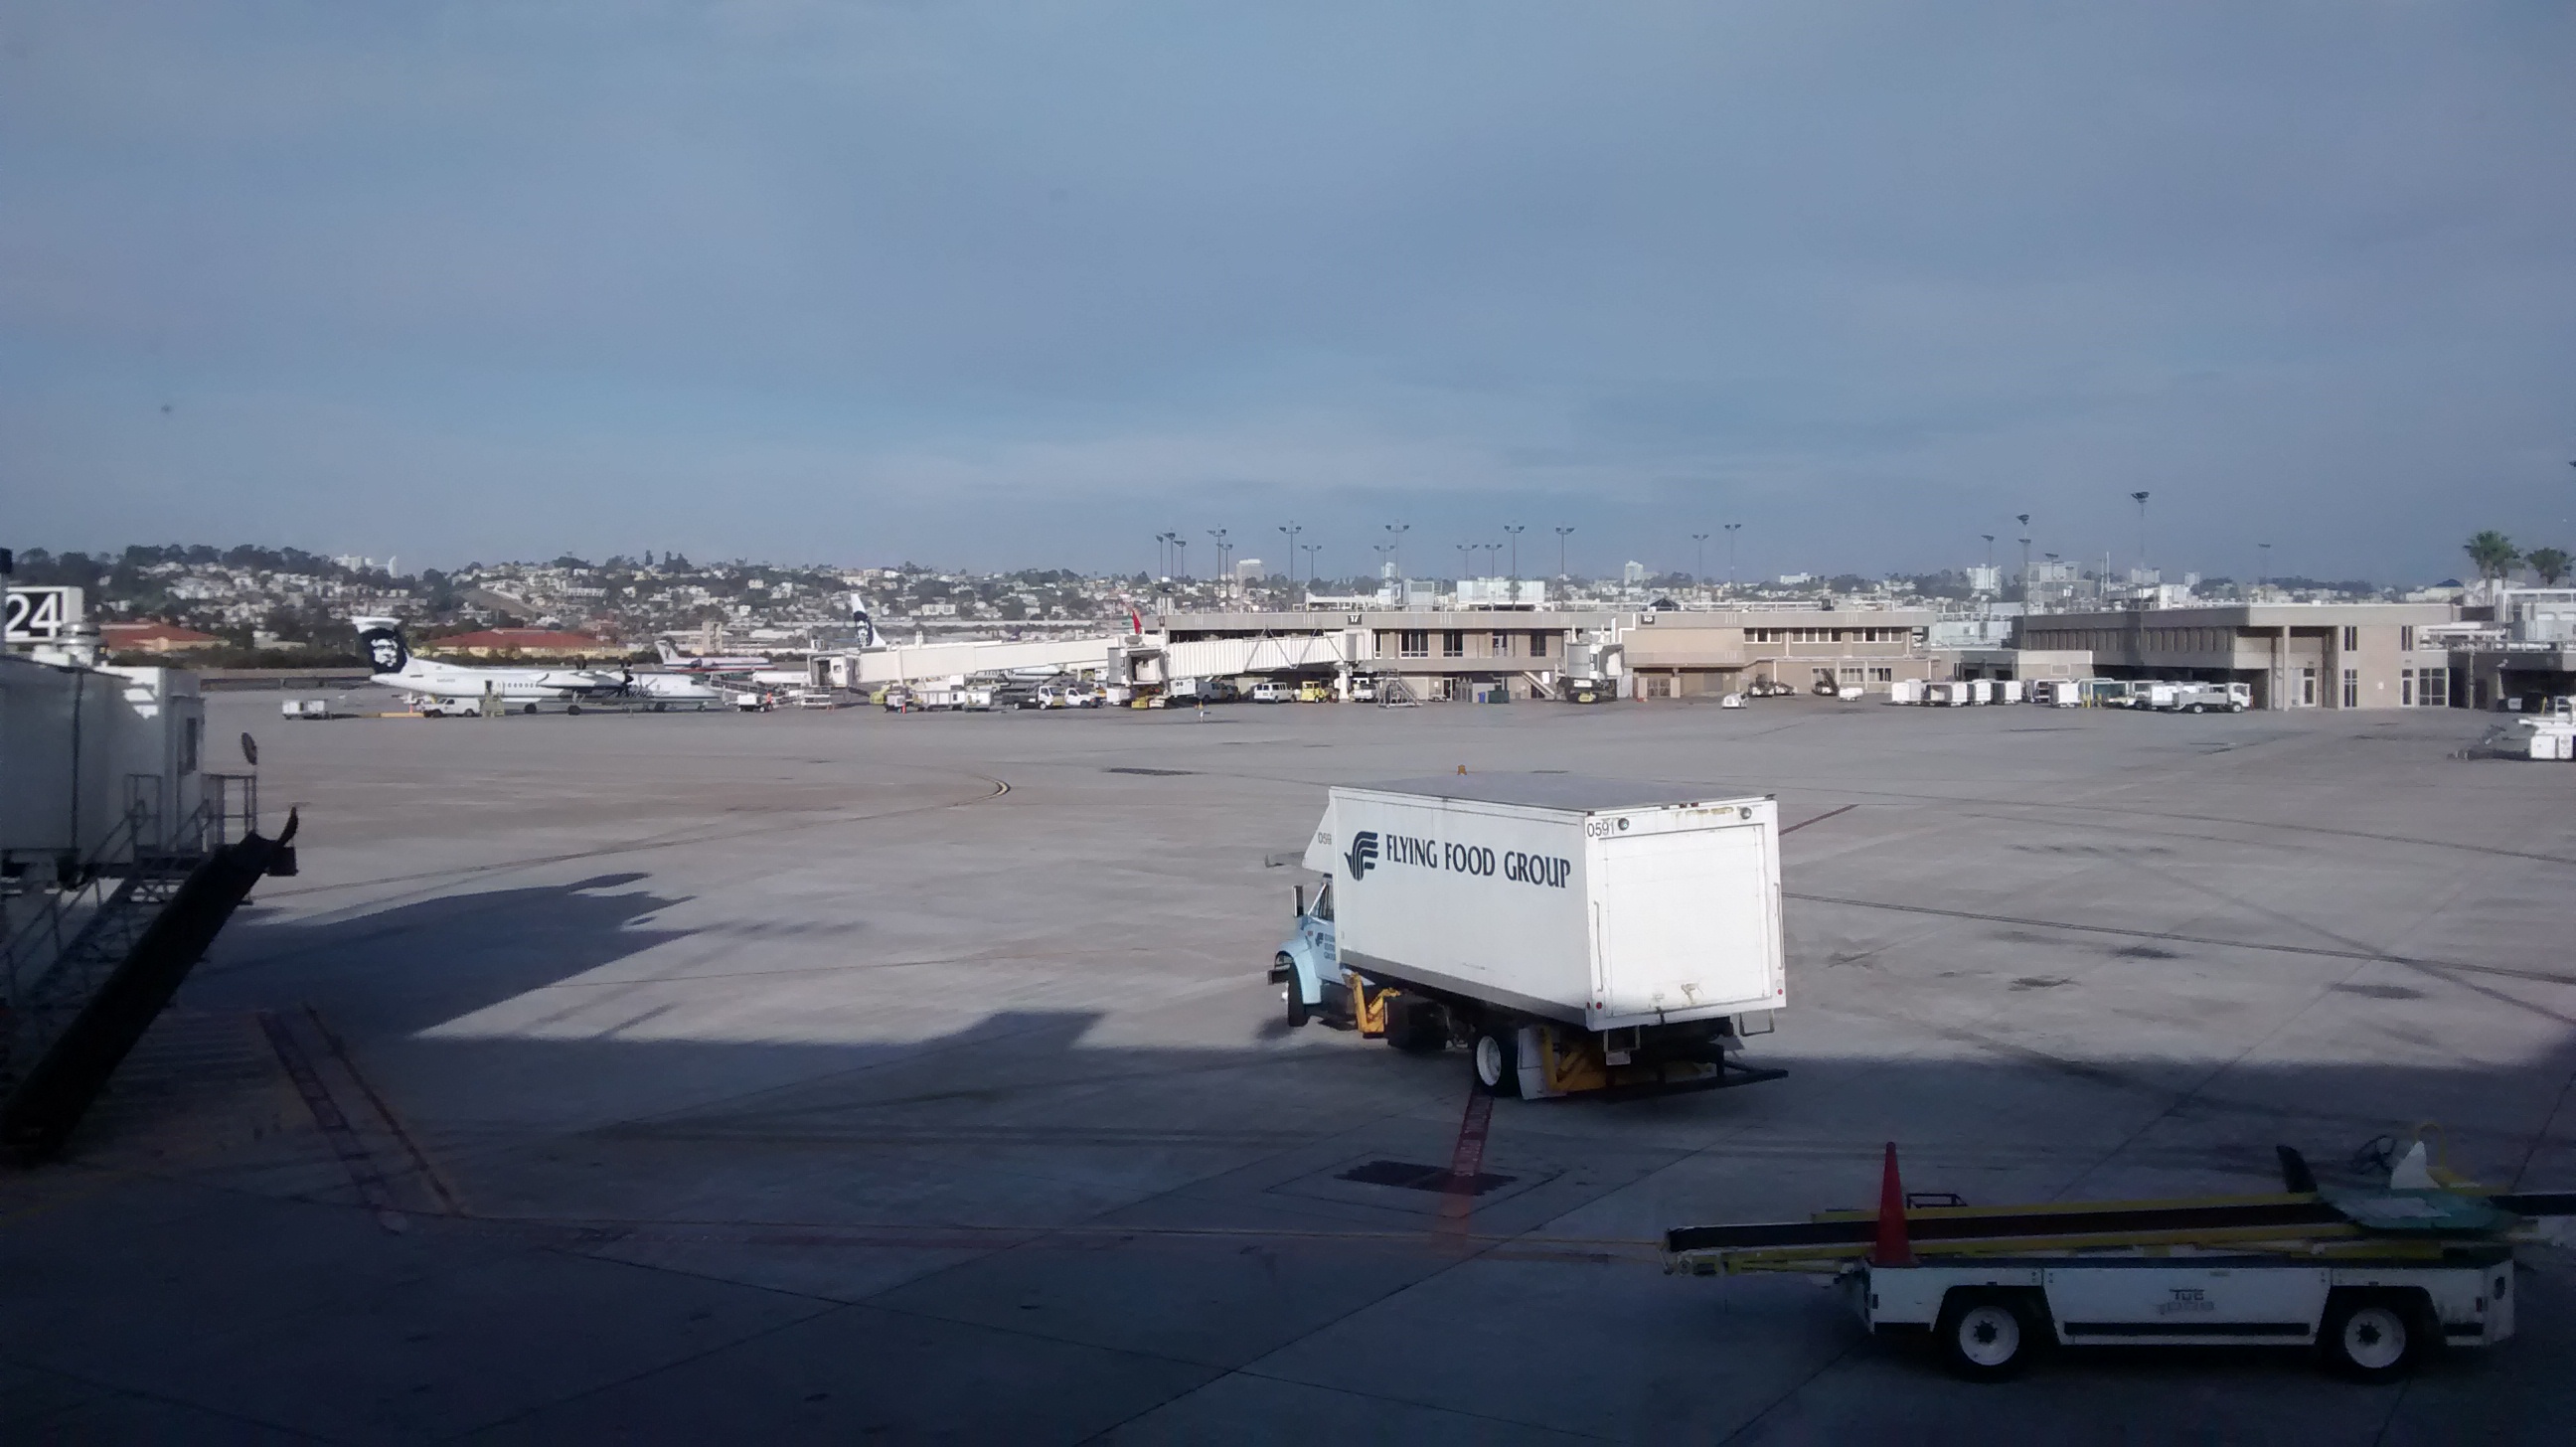 San Diego Airoport